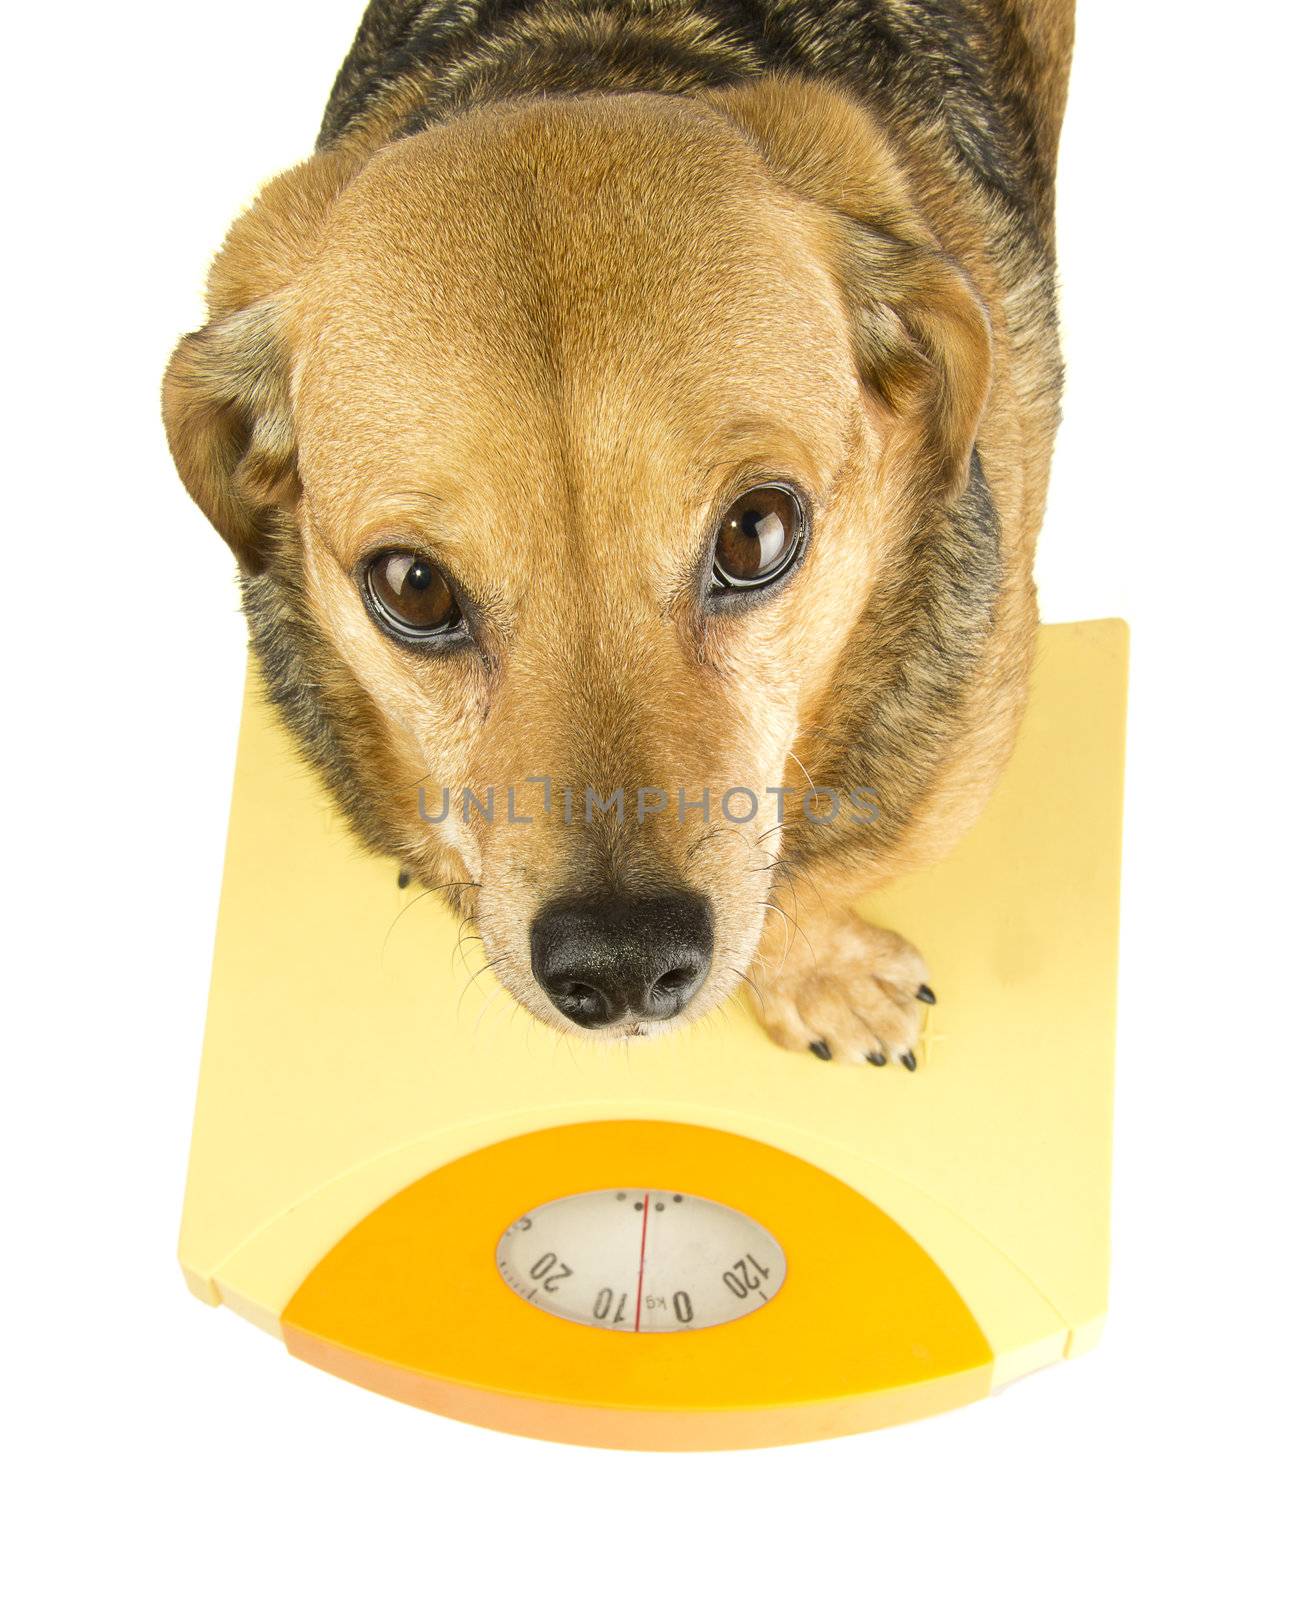 a dog weigh by danilobiancalana